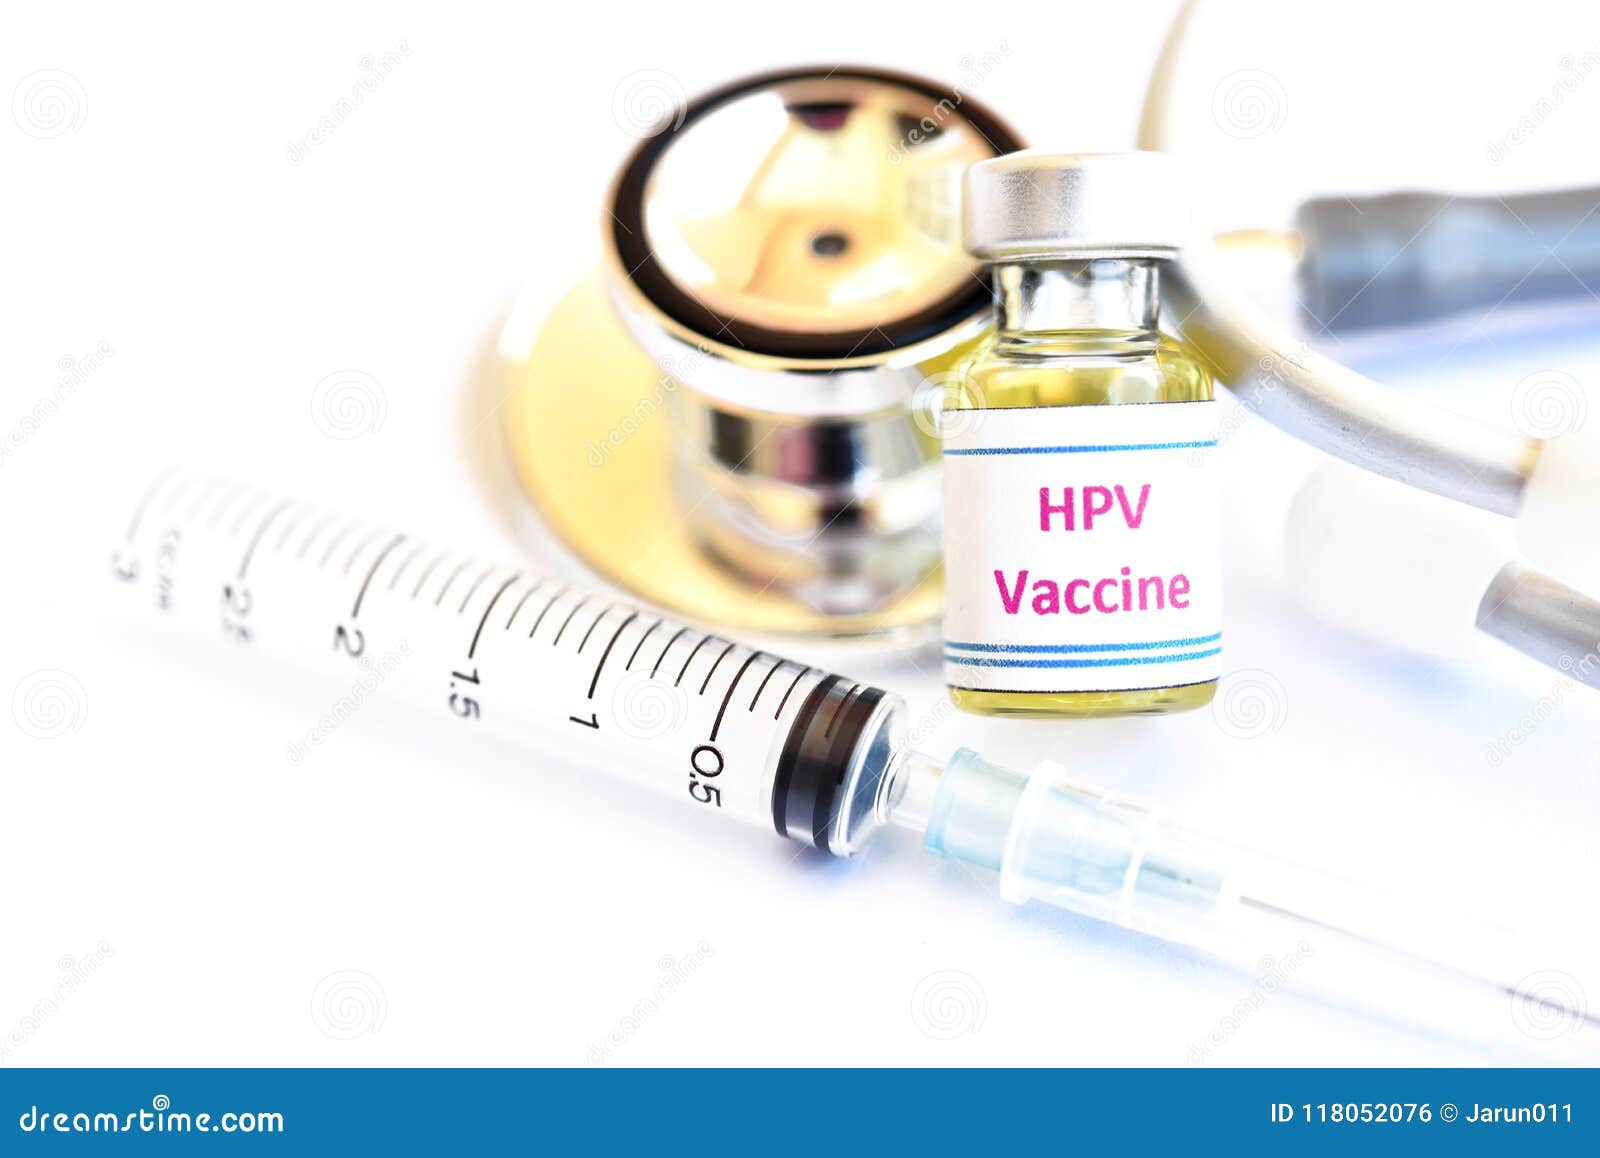 Hpv injection meaning. Human papillomavirus svenska